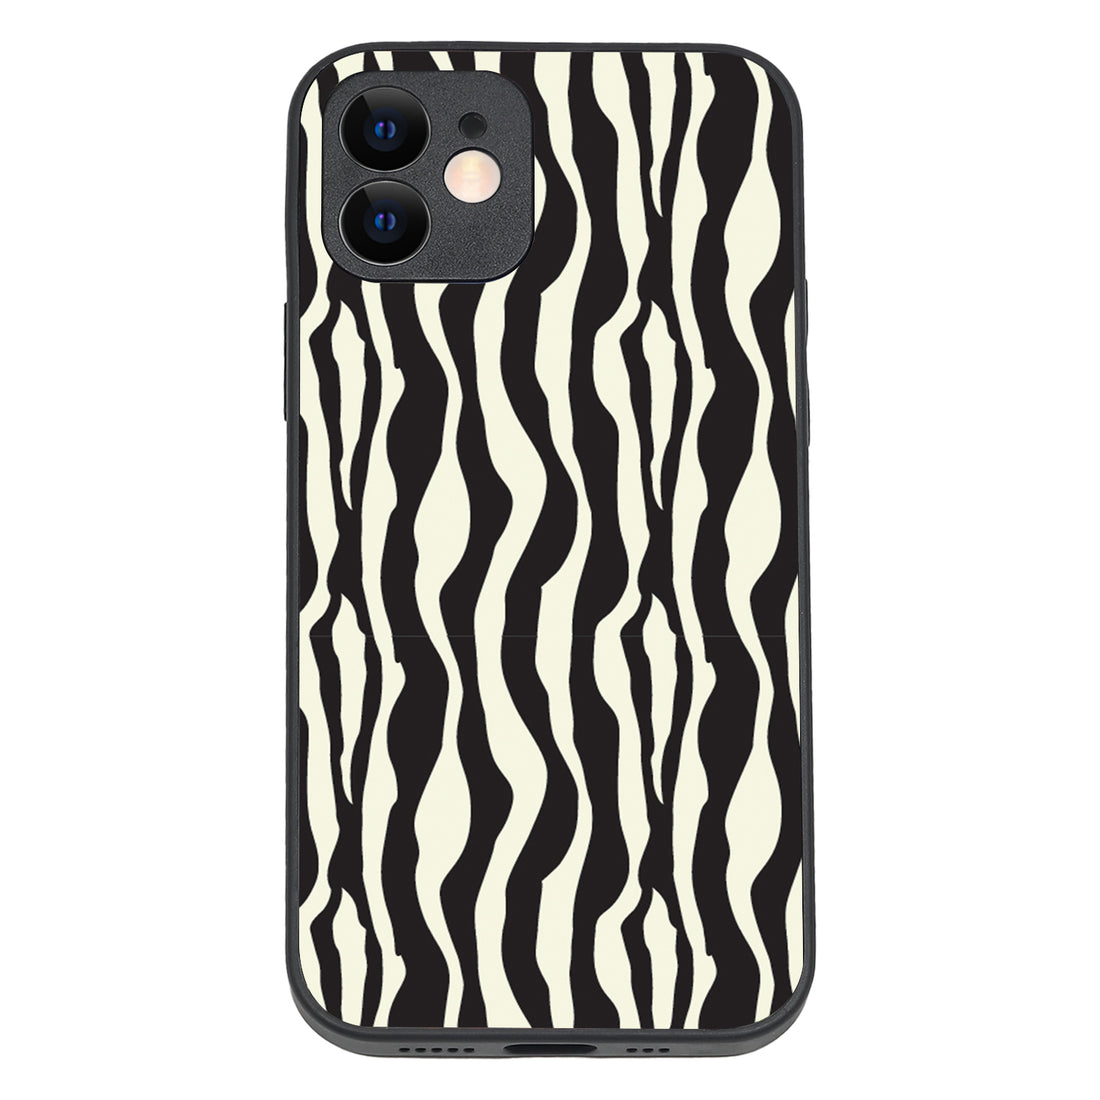 Zebra Animal Print iPhone 12 Case